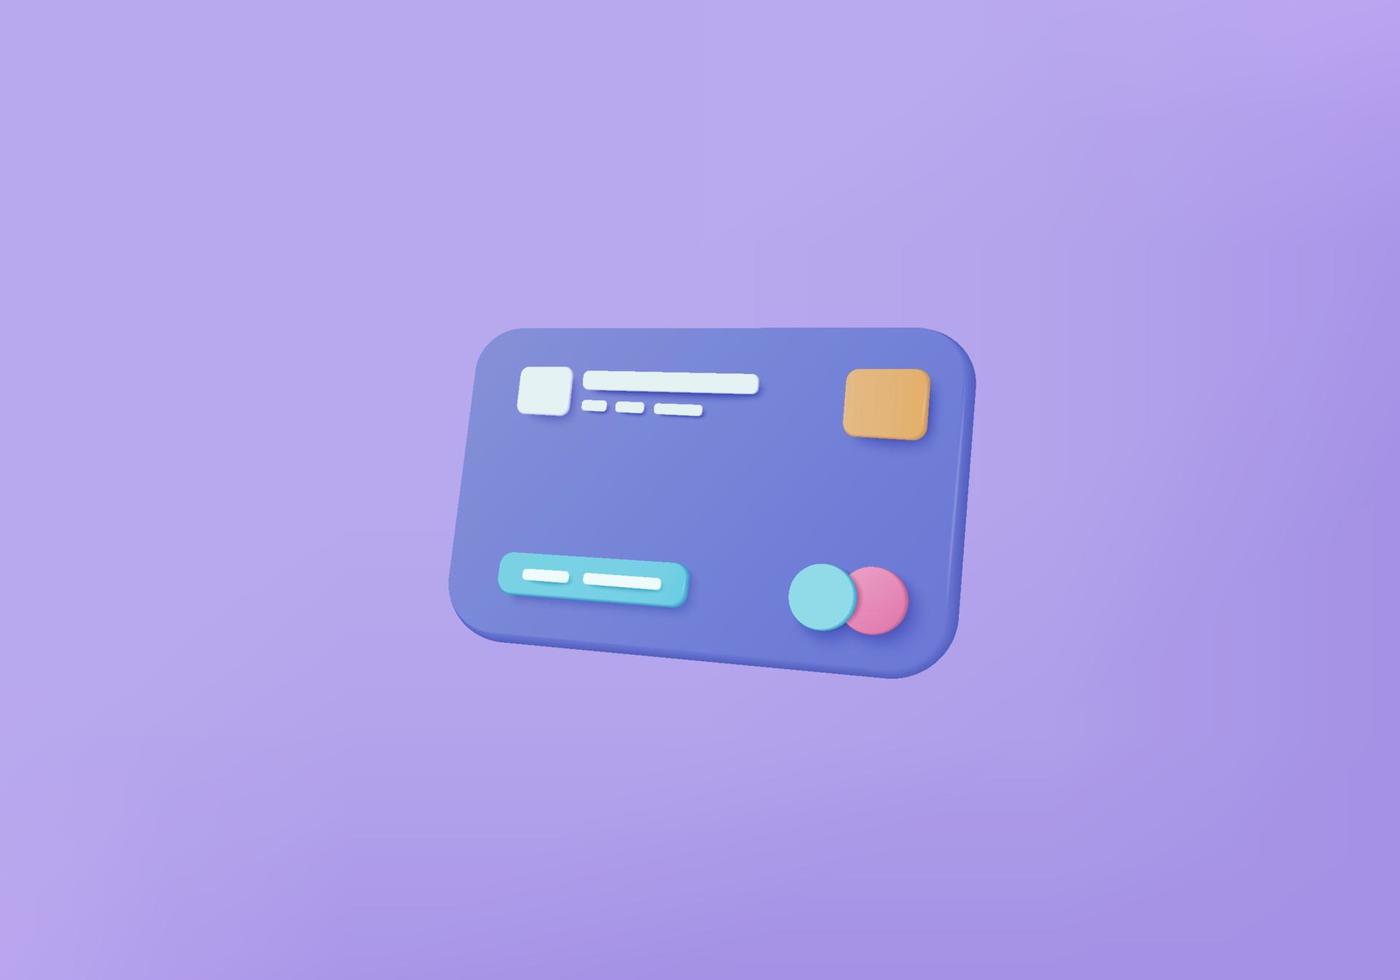 3D-Kreditkartengeld-Finanzsicherheit für Online-Shopping, Online-Zahlungskreditkarte mit Zahlungsschutzkonzept. 3D-Rendering für Geschäftsfinanzierung, Online-Banking und Online-Shopping für Sicherheit vektor